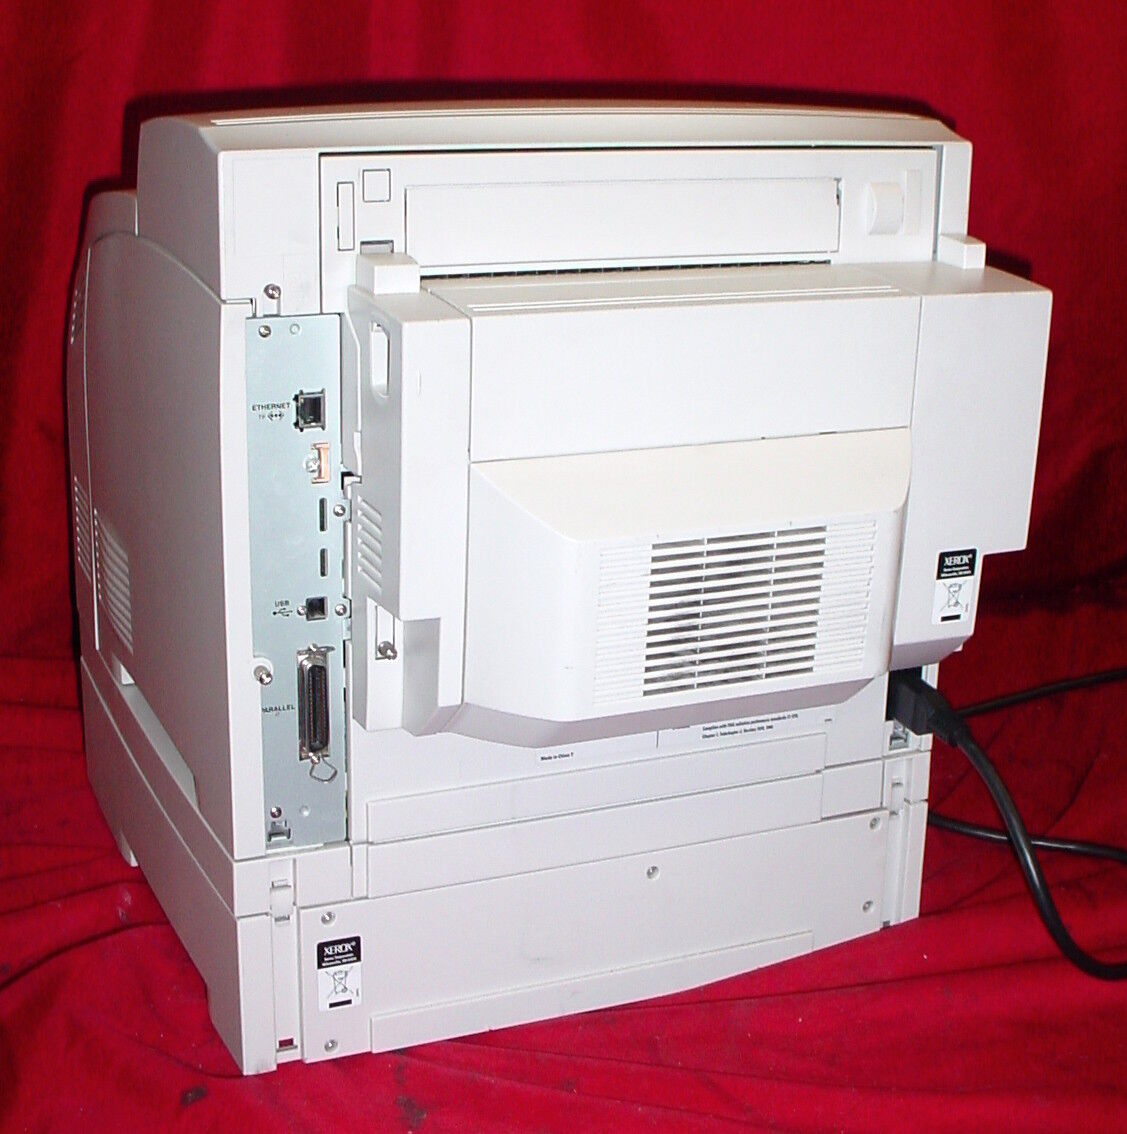 Xerox Phaser 4510 B&W Laser Printer, 45PPM, 1200x1200DPI, USB/Parallel Ports #2 Ograniczony do 24 godzin